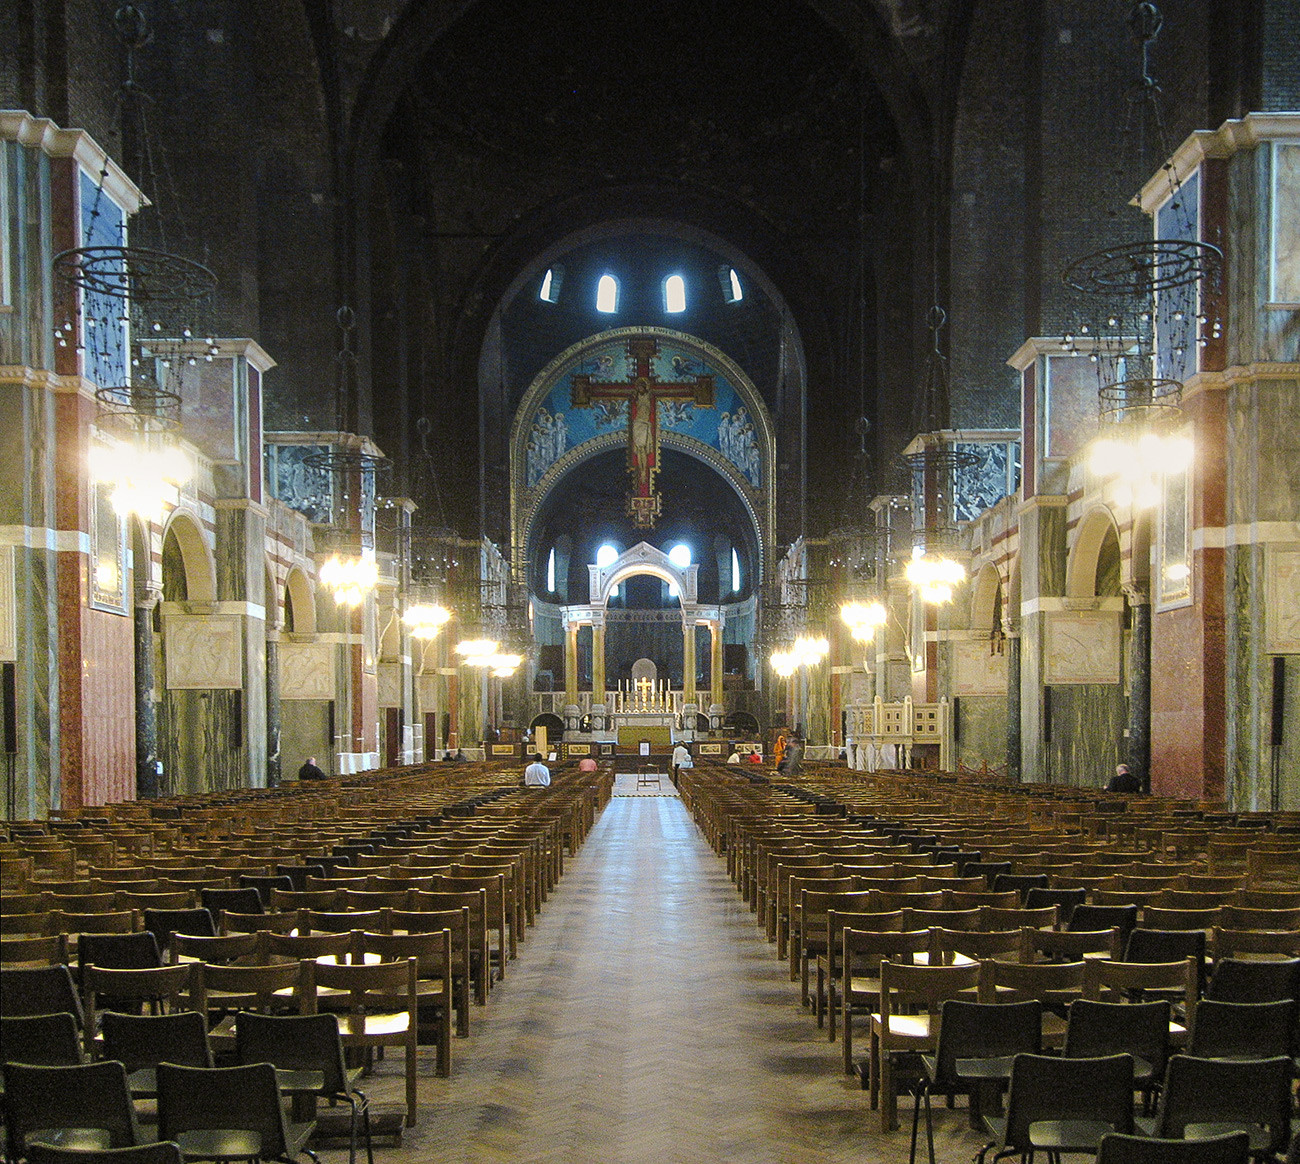 La escena fue filmada en la catedral católica de Westminster en Londres (no confundir con la abadía de Westminster)